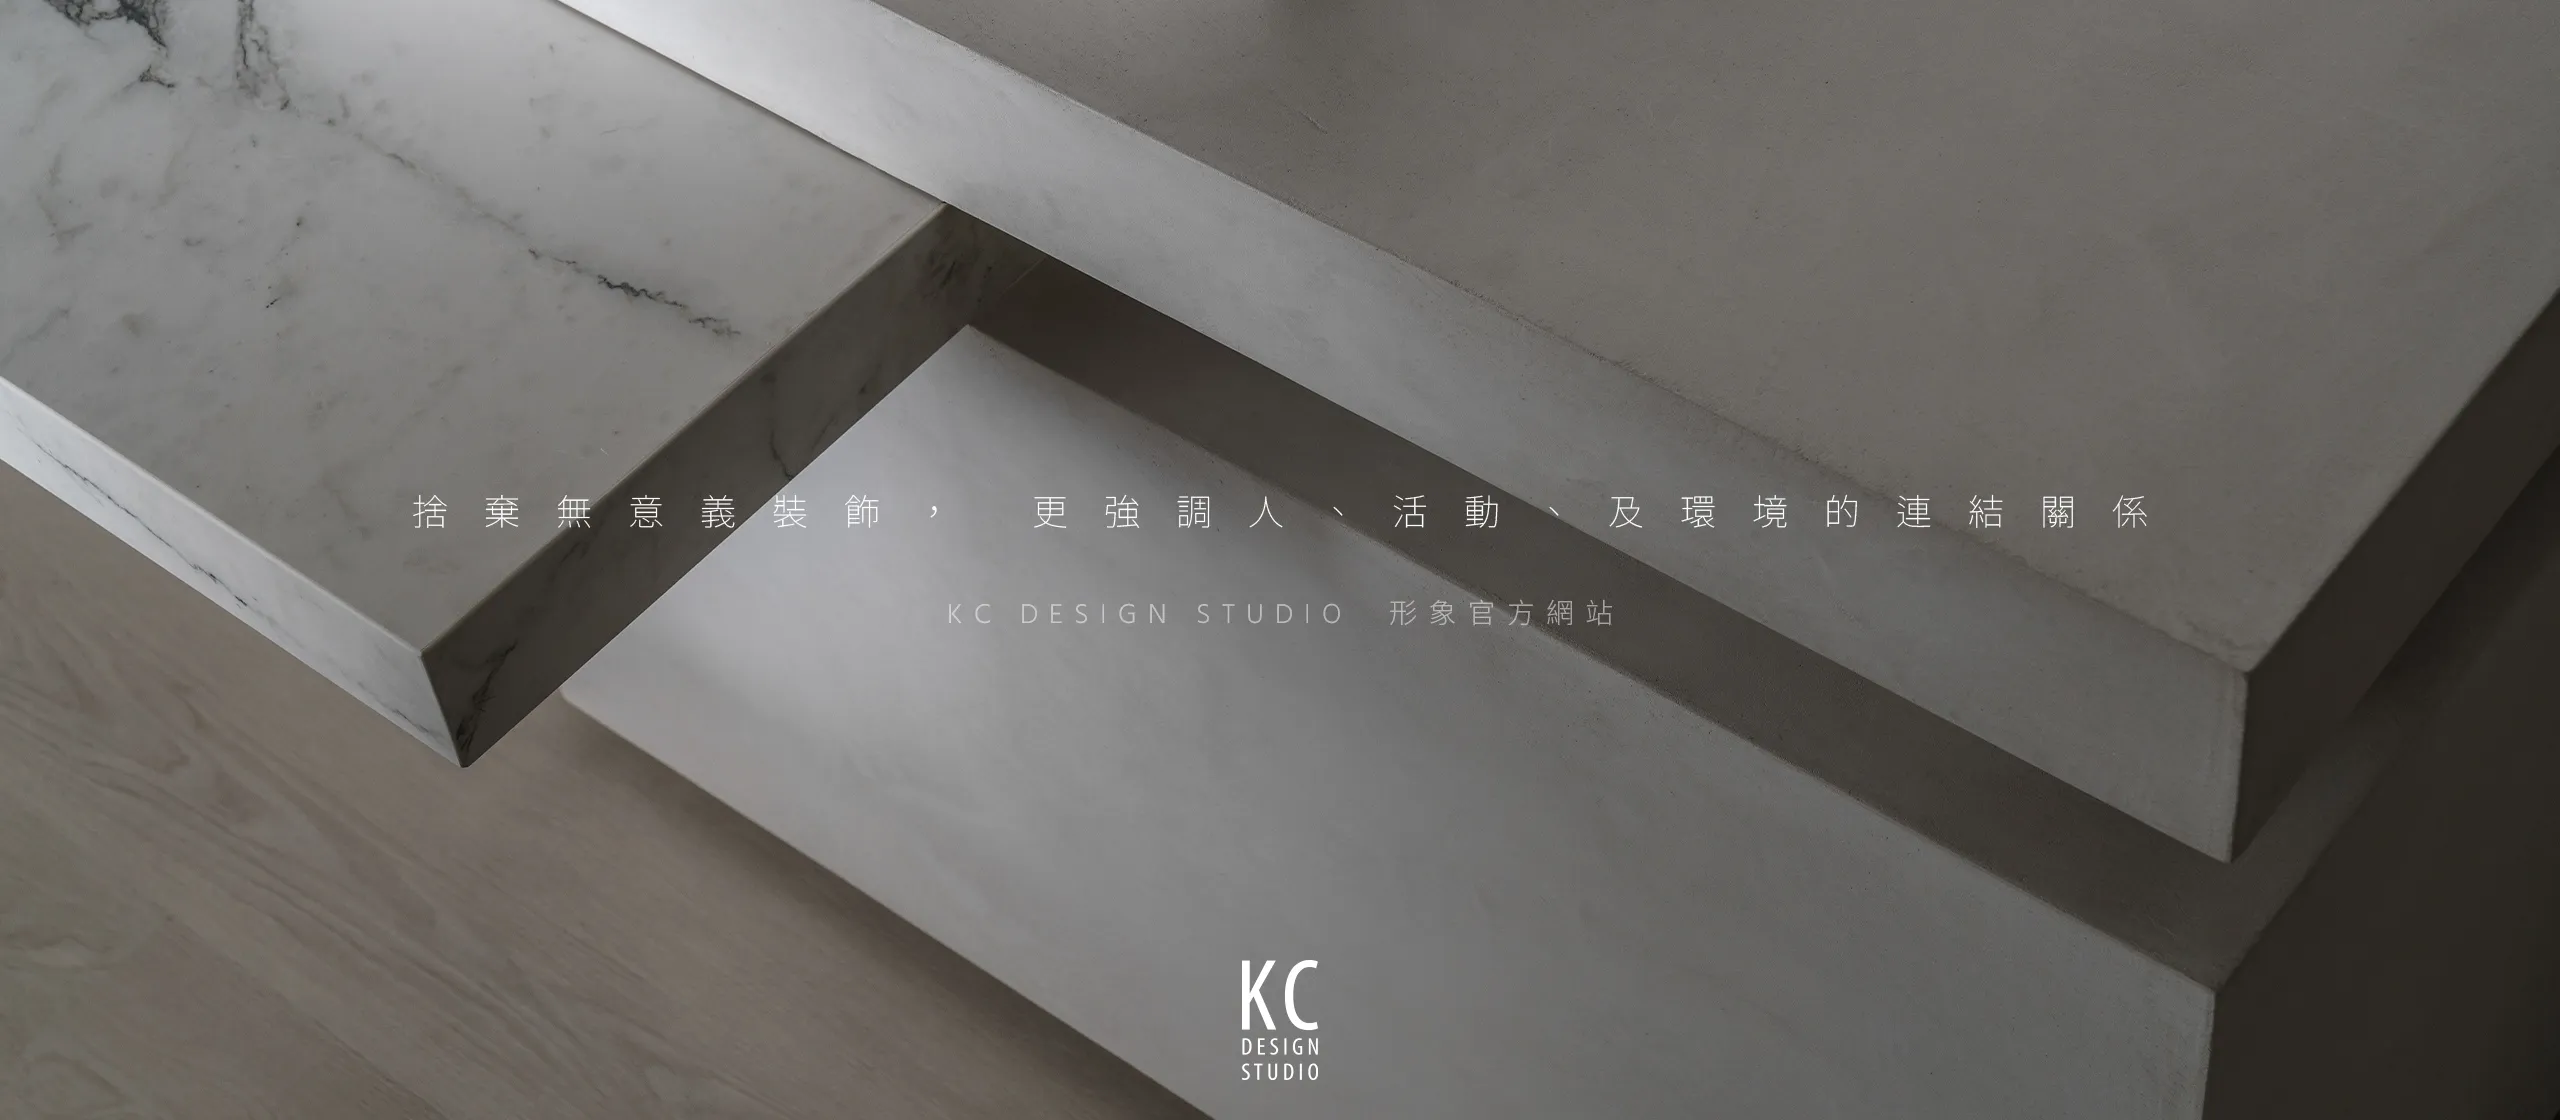 台北 KC DESIGN RWD形象官網/網站設計/動態網站設計/形象官網設計